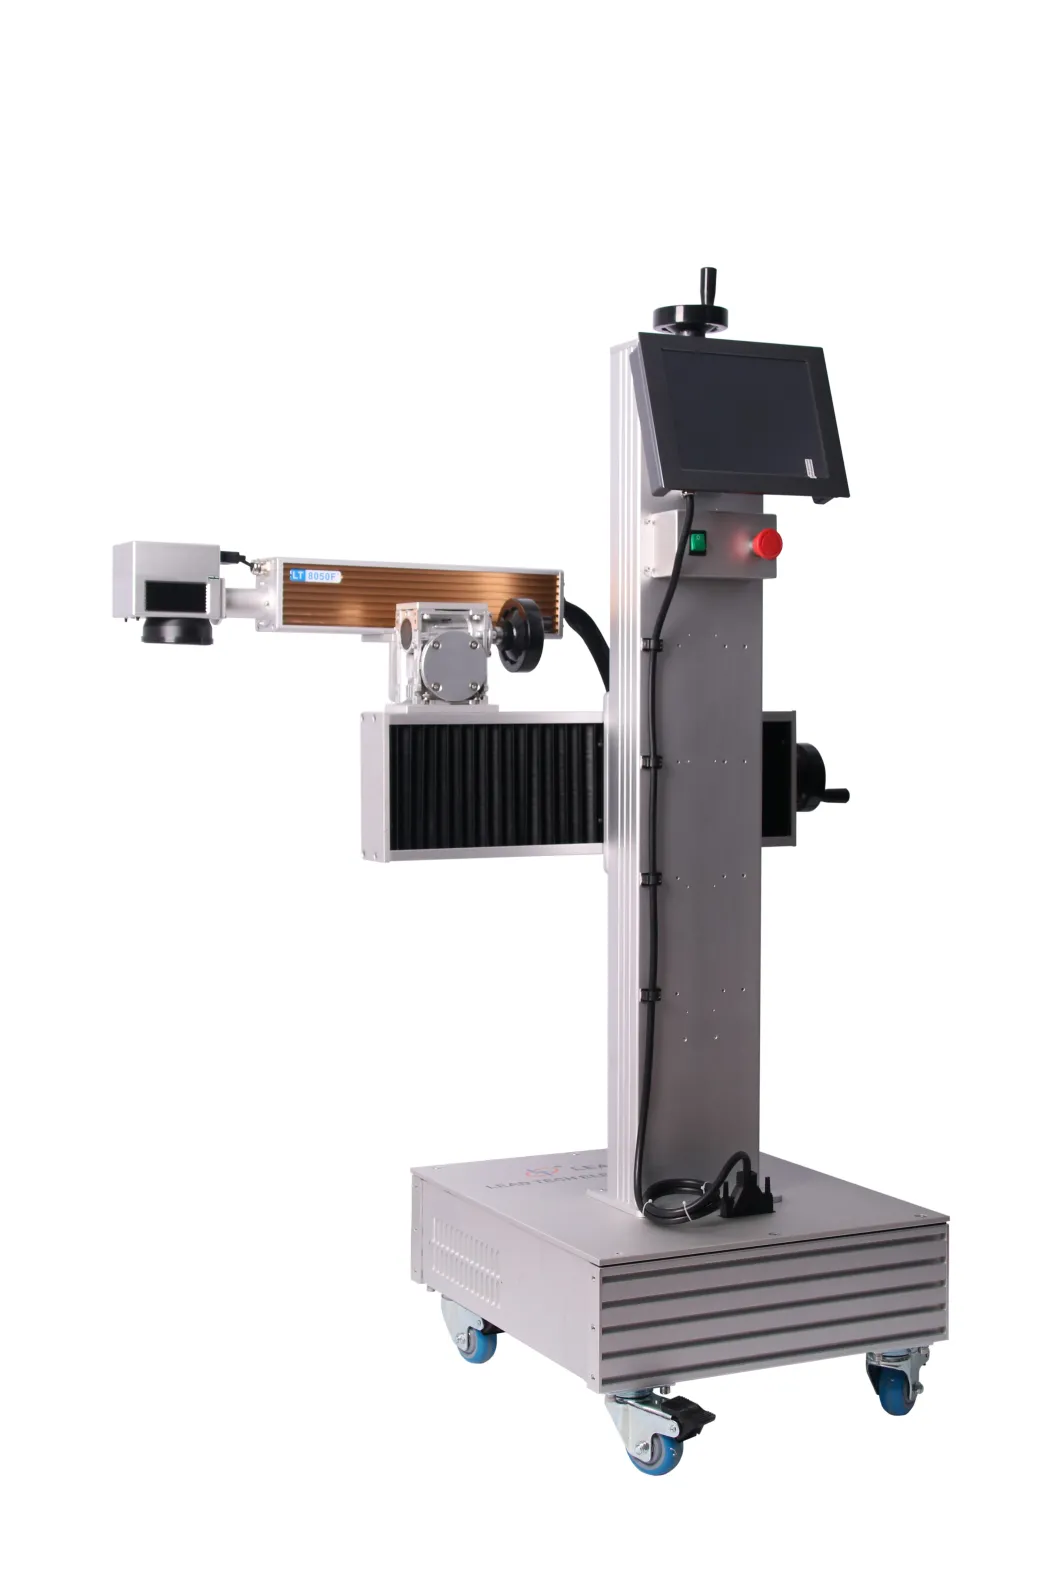 Lt8020f/Lt8030f/Lt8050f Laser Marking Metal Plastic Case Fiber Laser Printer